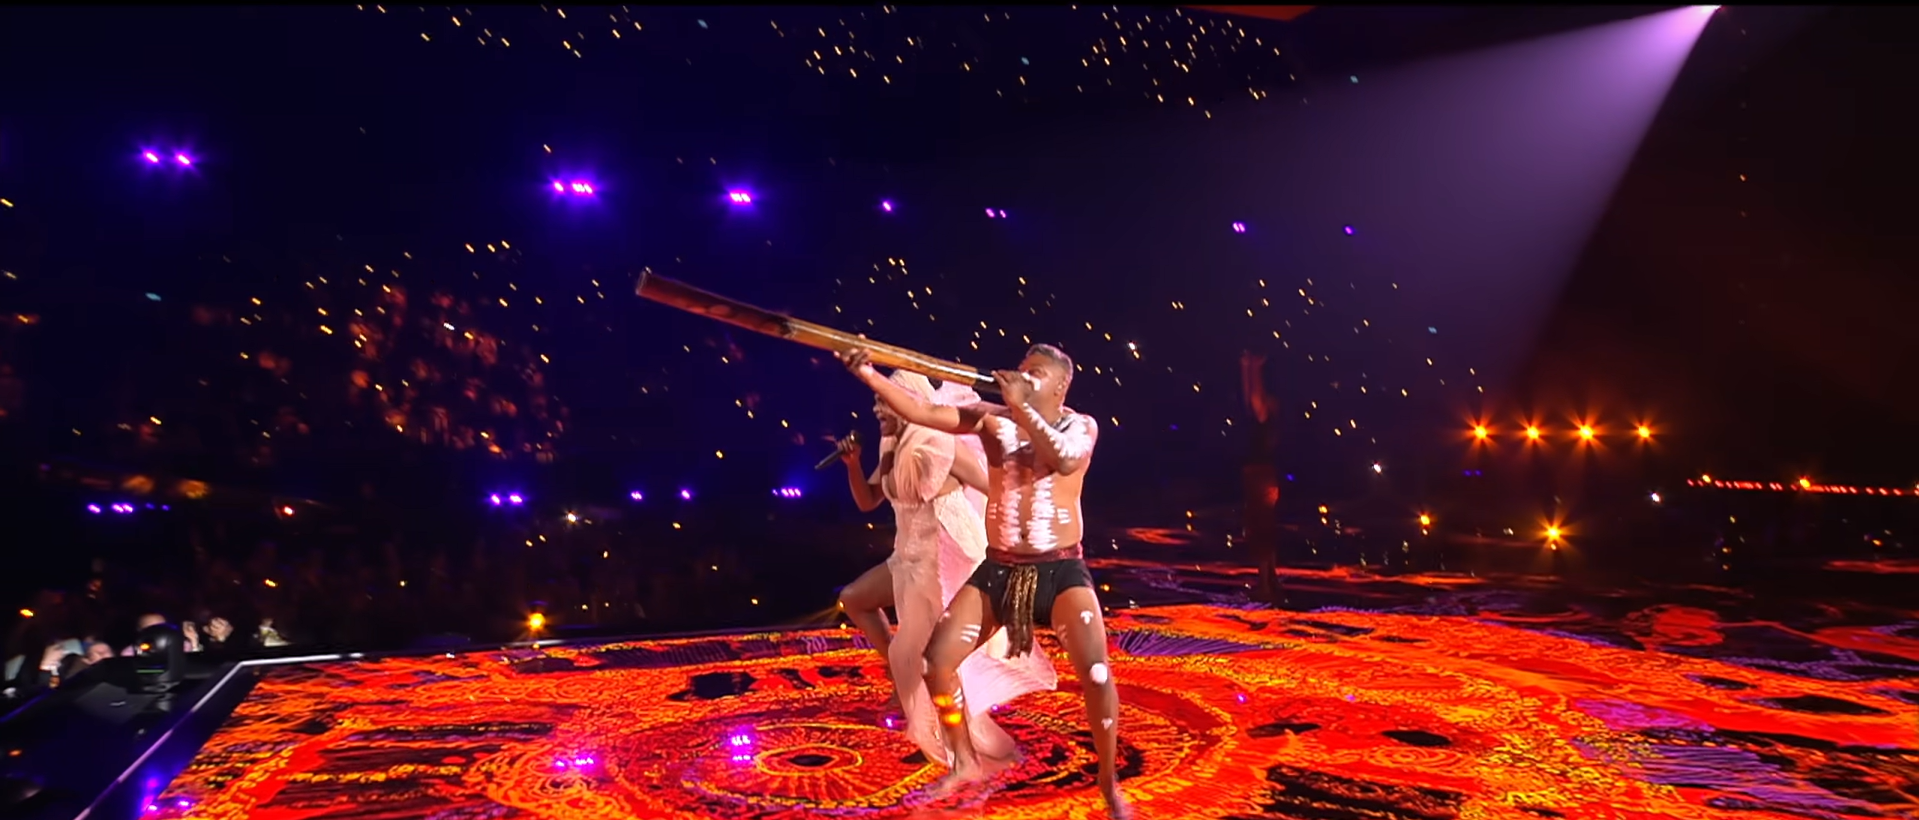 Песня Австралии вошла в историю Евровидения: о чем не попавшая в финал One Mikali (One Blood) от Electric Fields